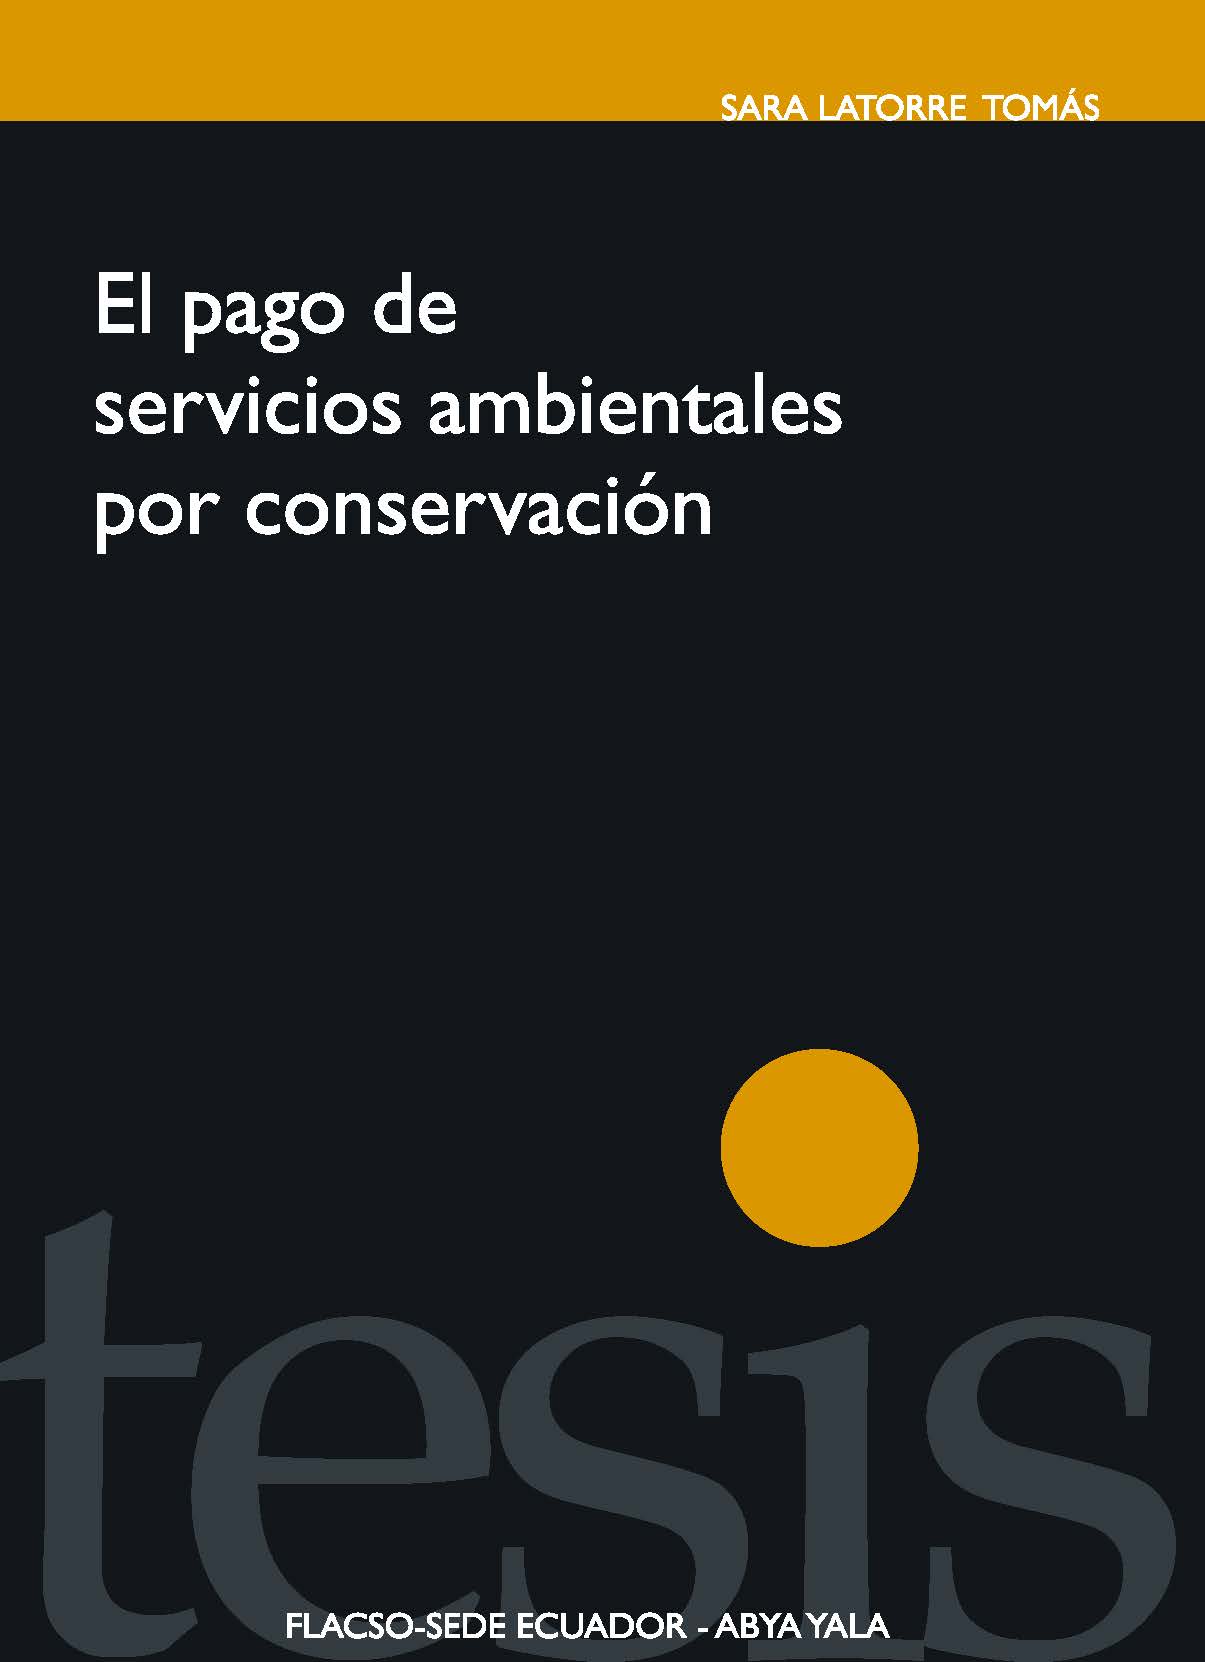 El pago de servicios ambientales por conservación: desarrollo con identidad en la gran Reserva Chachi de Esmeraldas